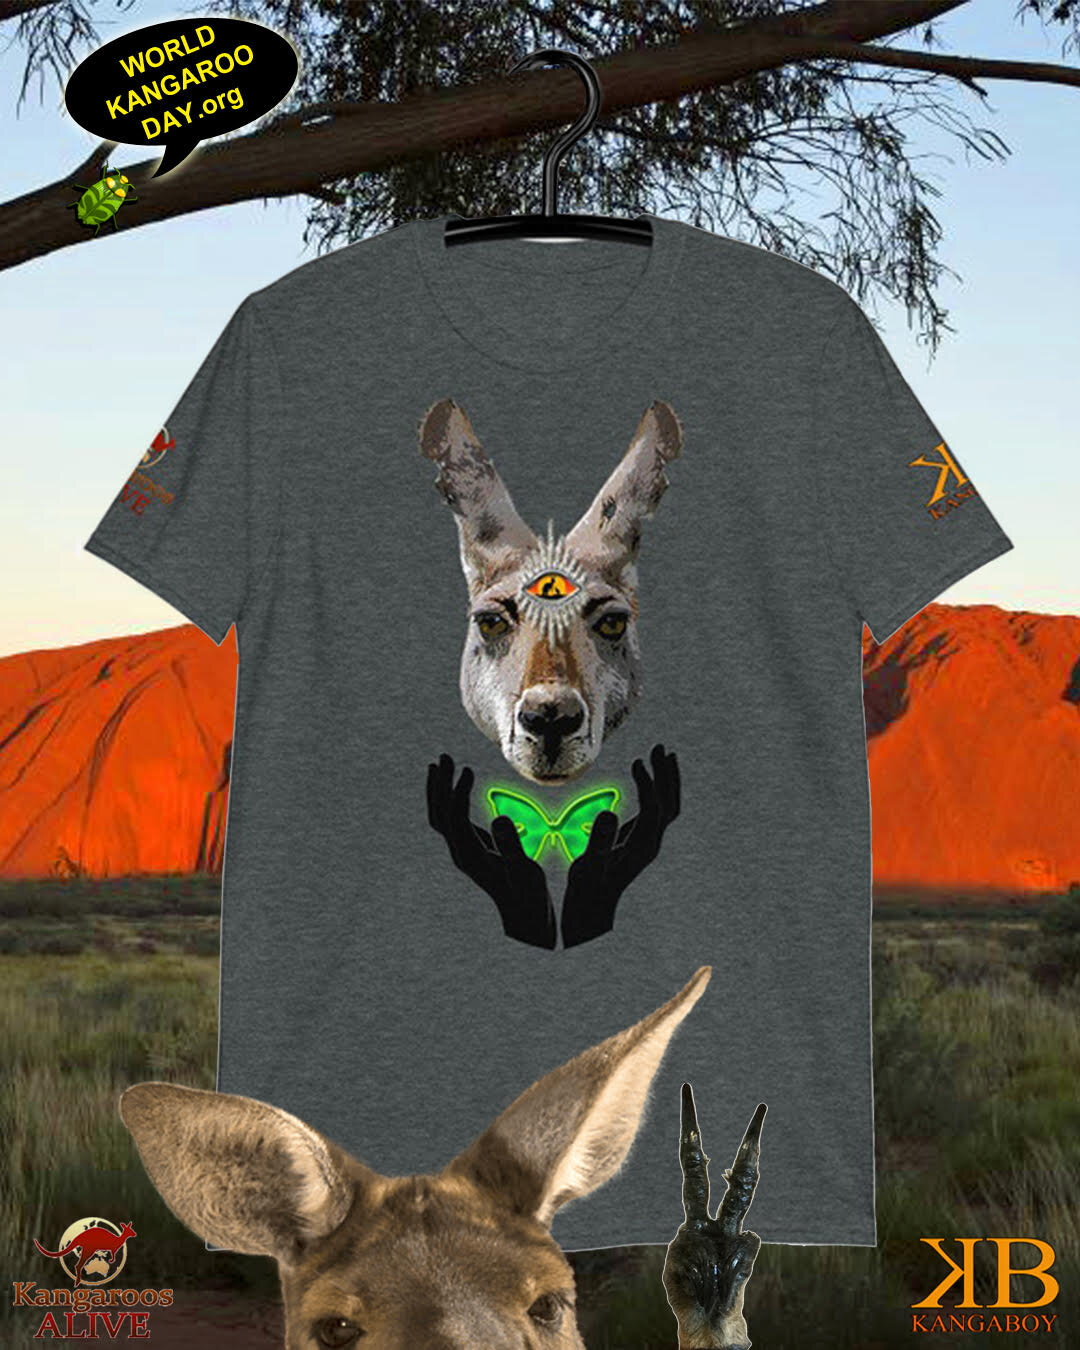 Kangaboy Streetwear World Kangaroo Day T-Shirt — WORLD KANGAROO DAY -  October 24